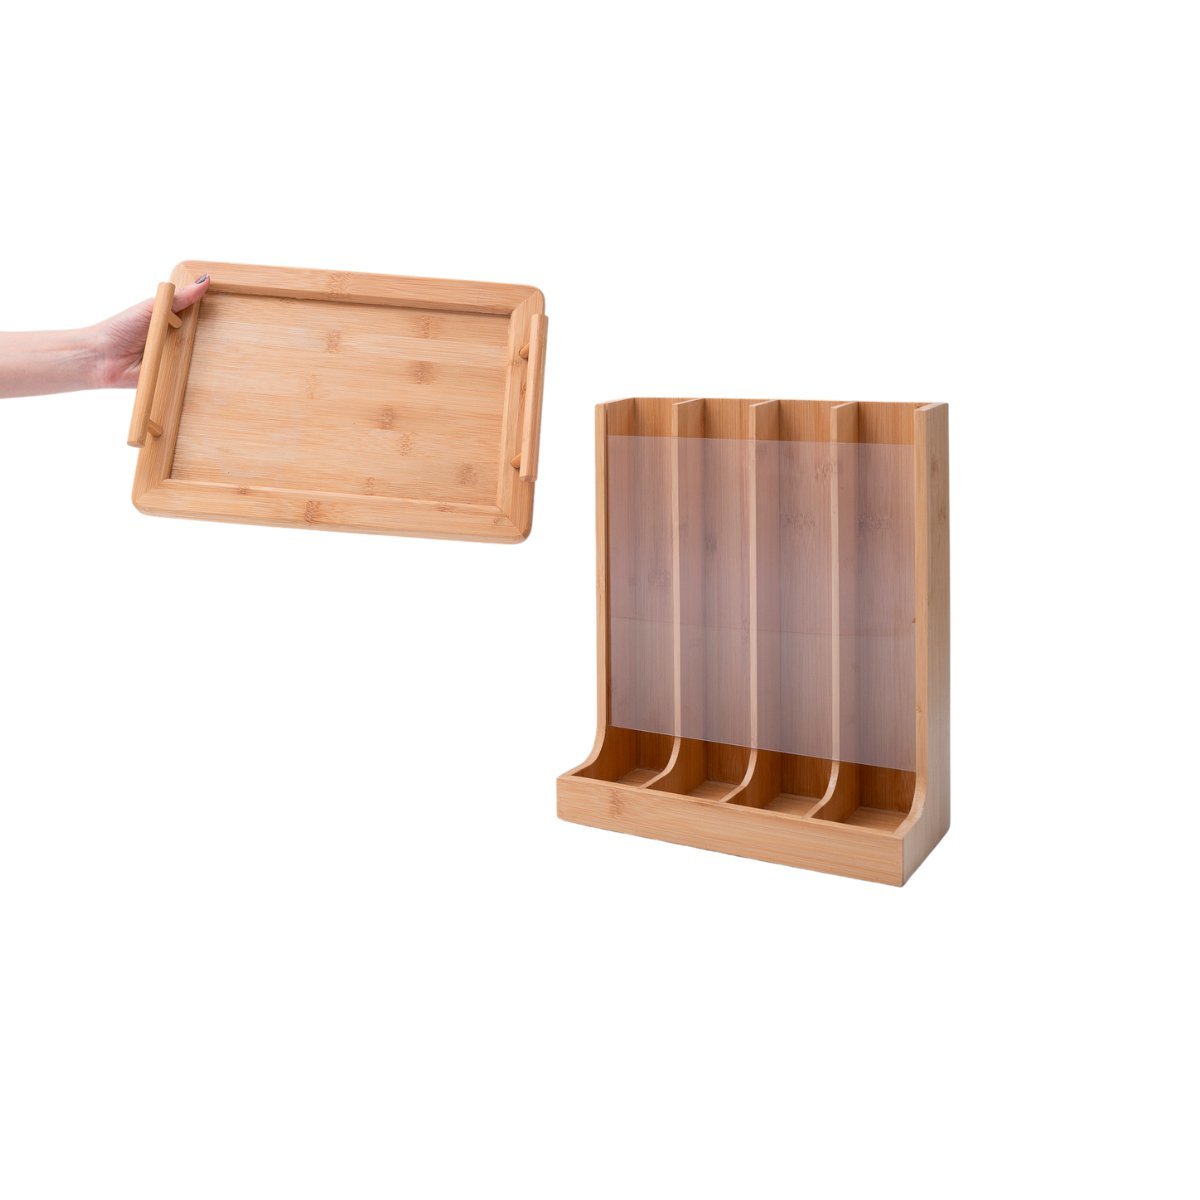 Kit com porta cápsulas e bandeja retangular com alças de bambu - Oikos